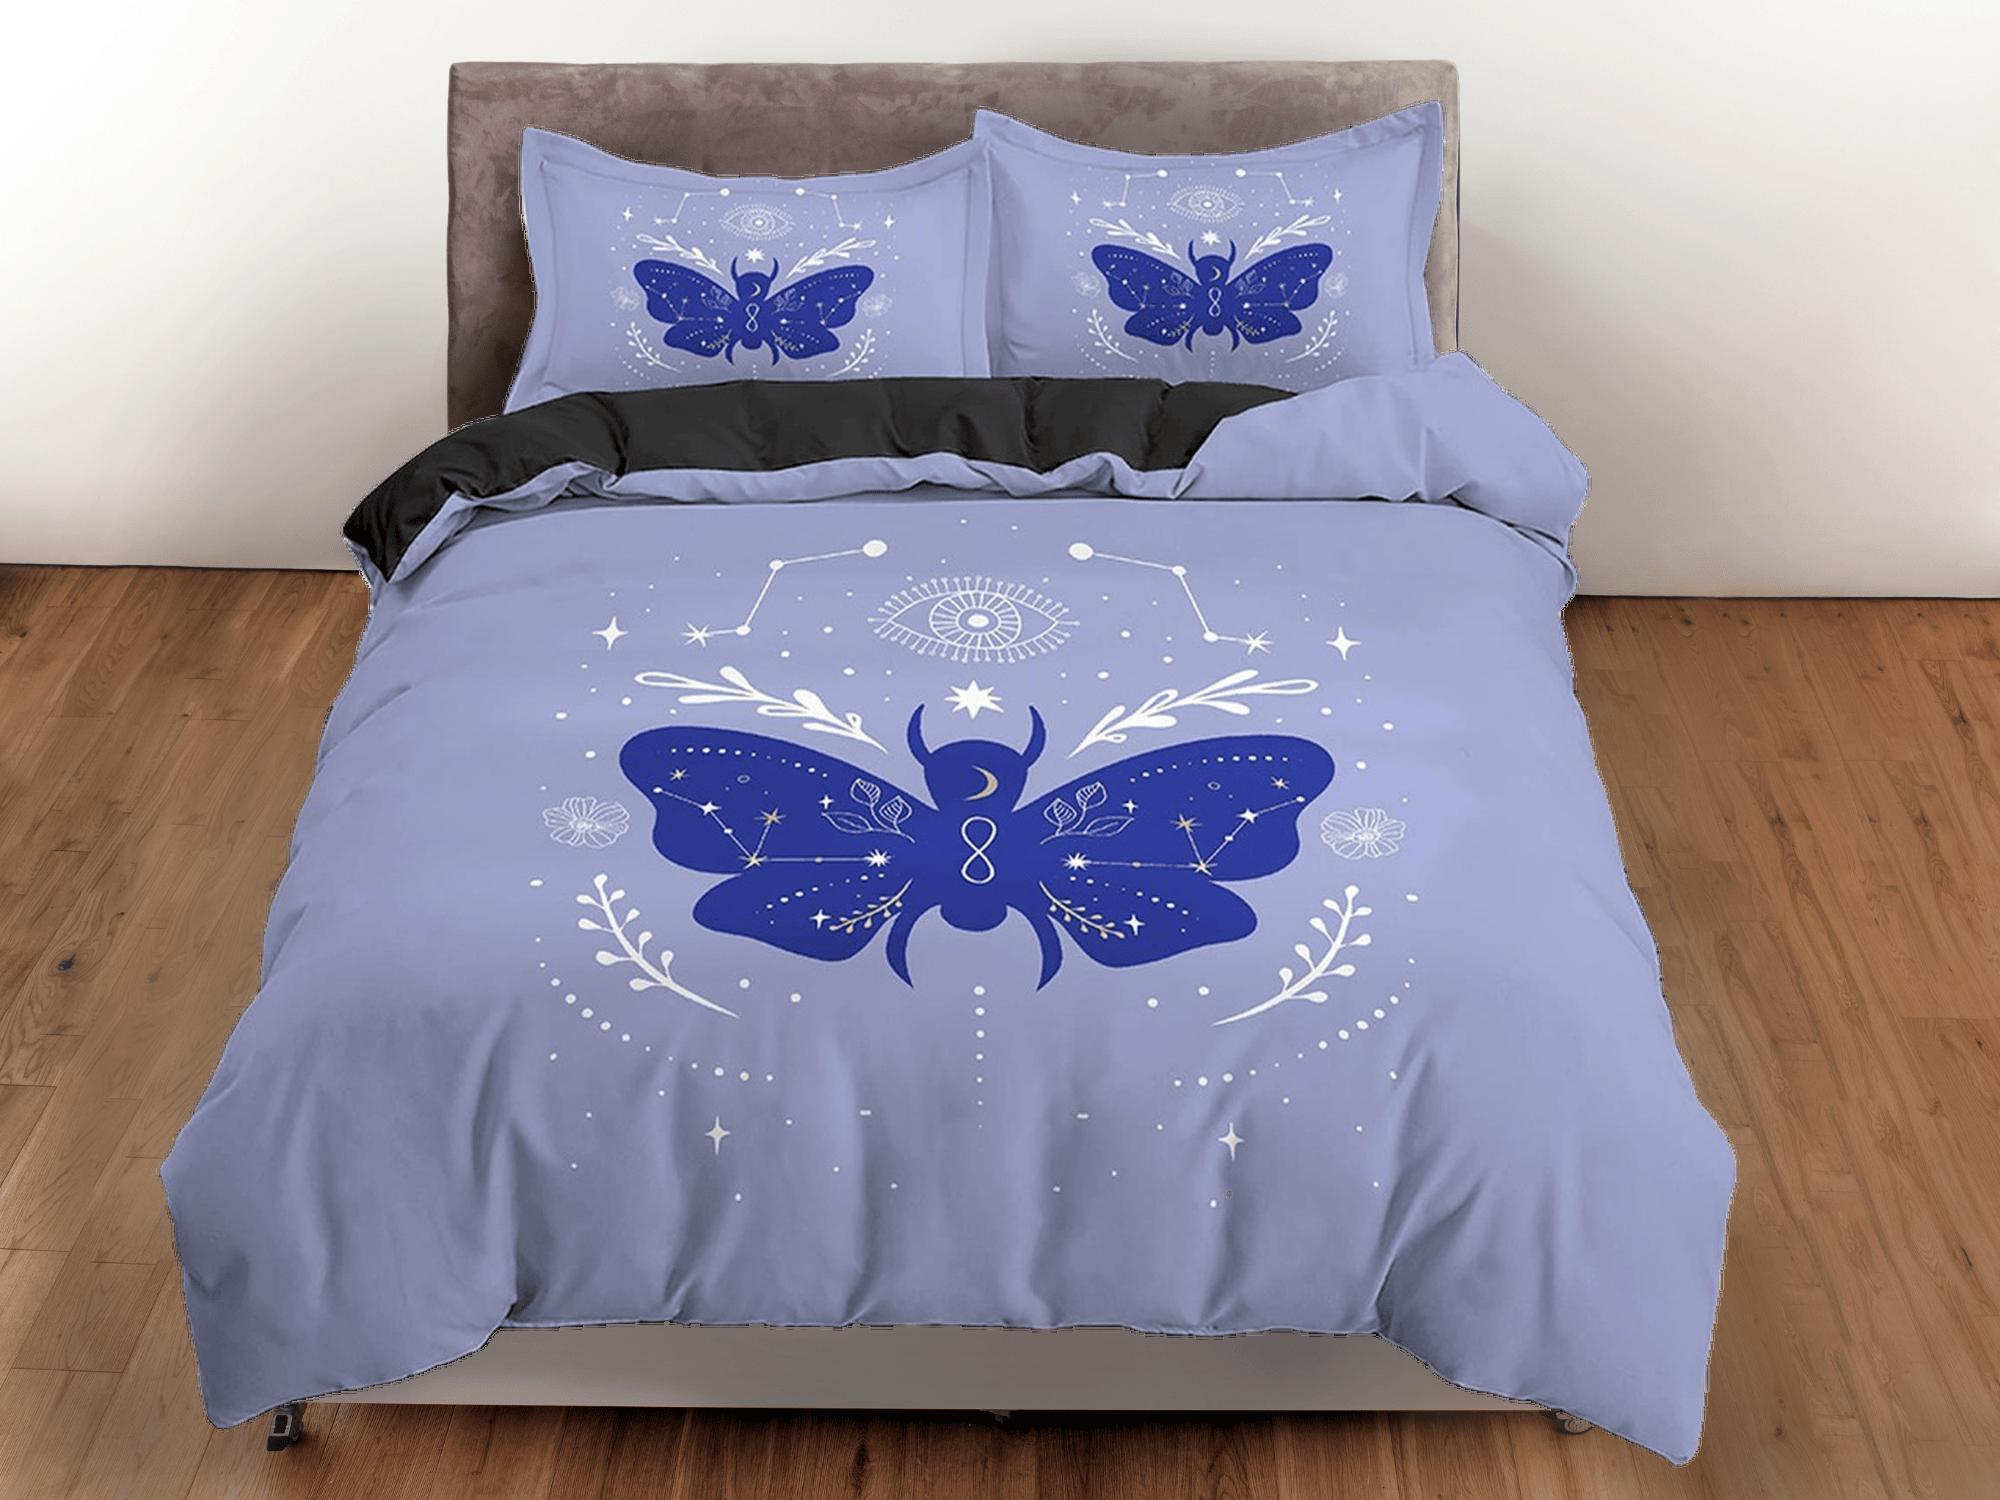 daintyduvet Purple Blue Boho Bedding with Moth and Stars, Celestial Dorm Bedding, Duvet Cover Set, Aesthetic Duvet Cover King Queen Full Twin Single